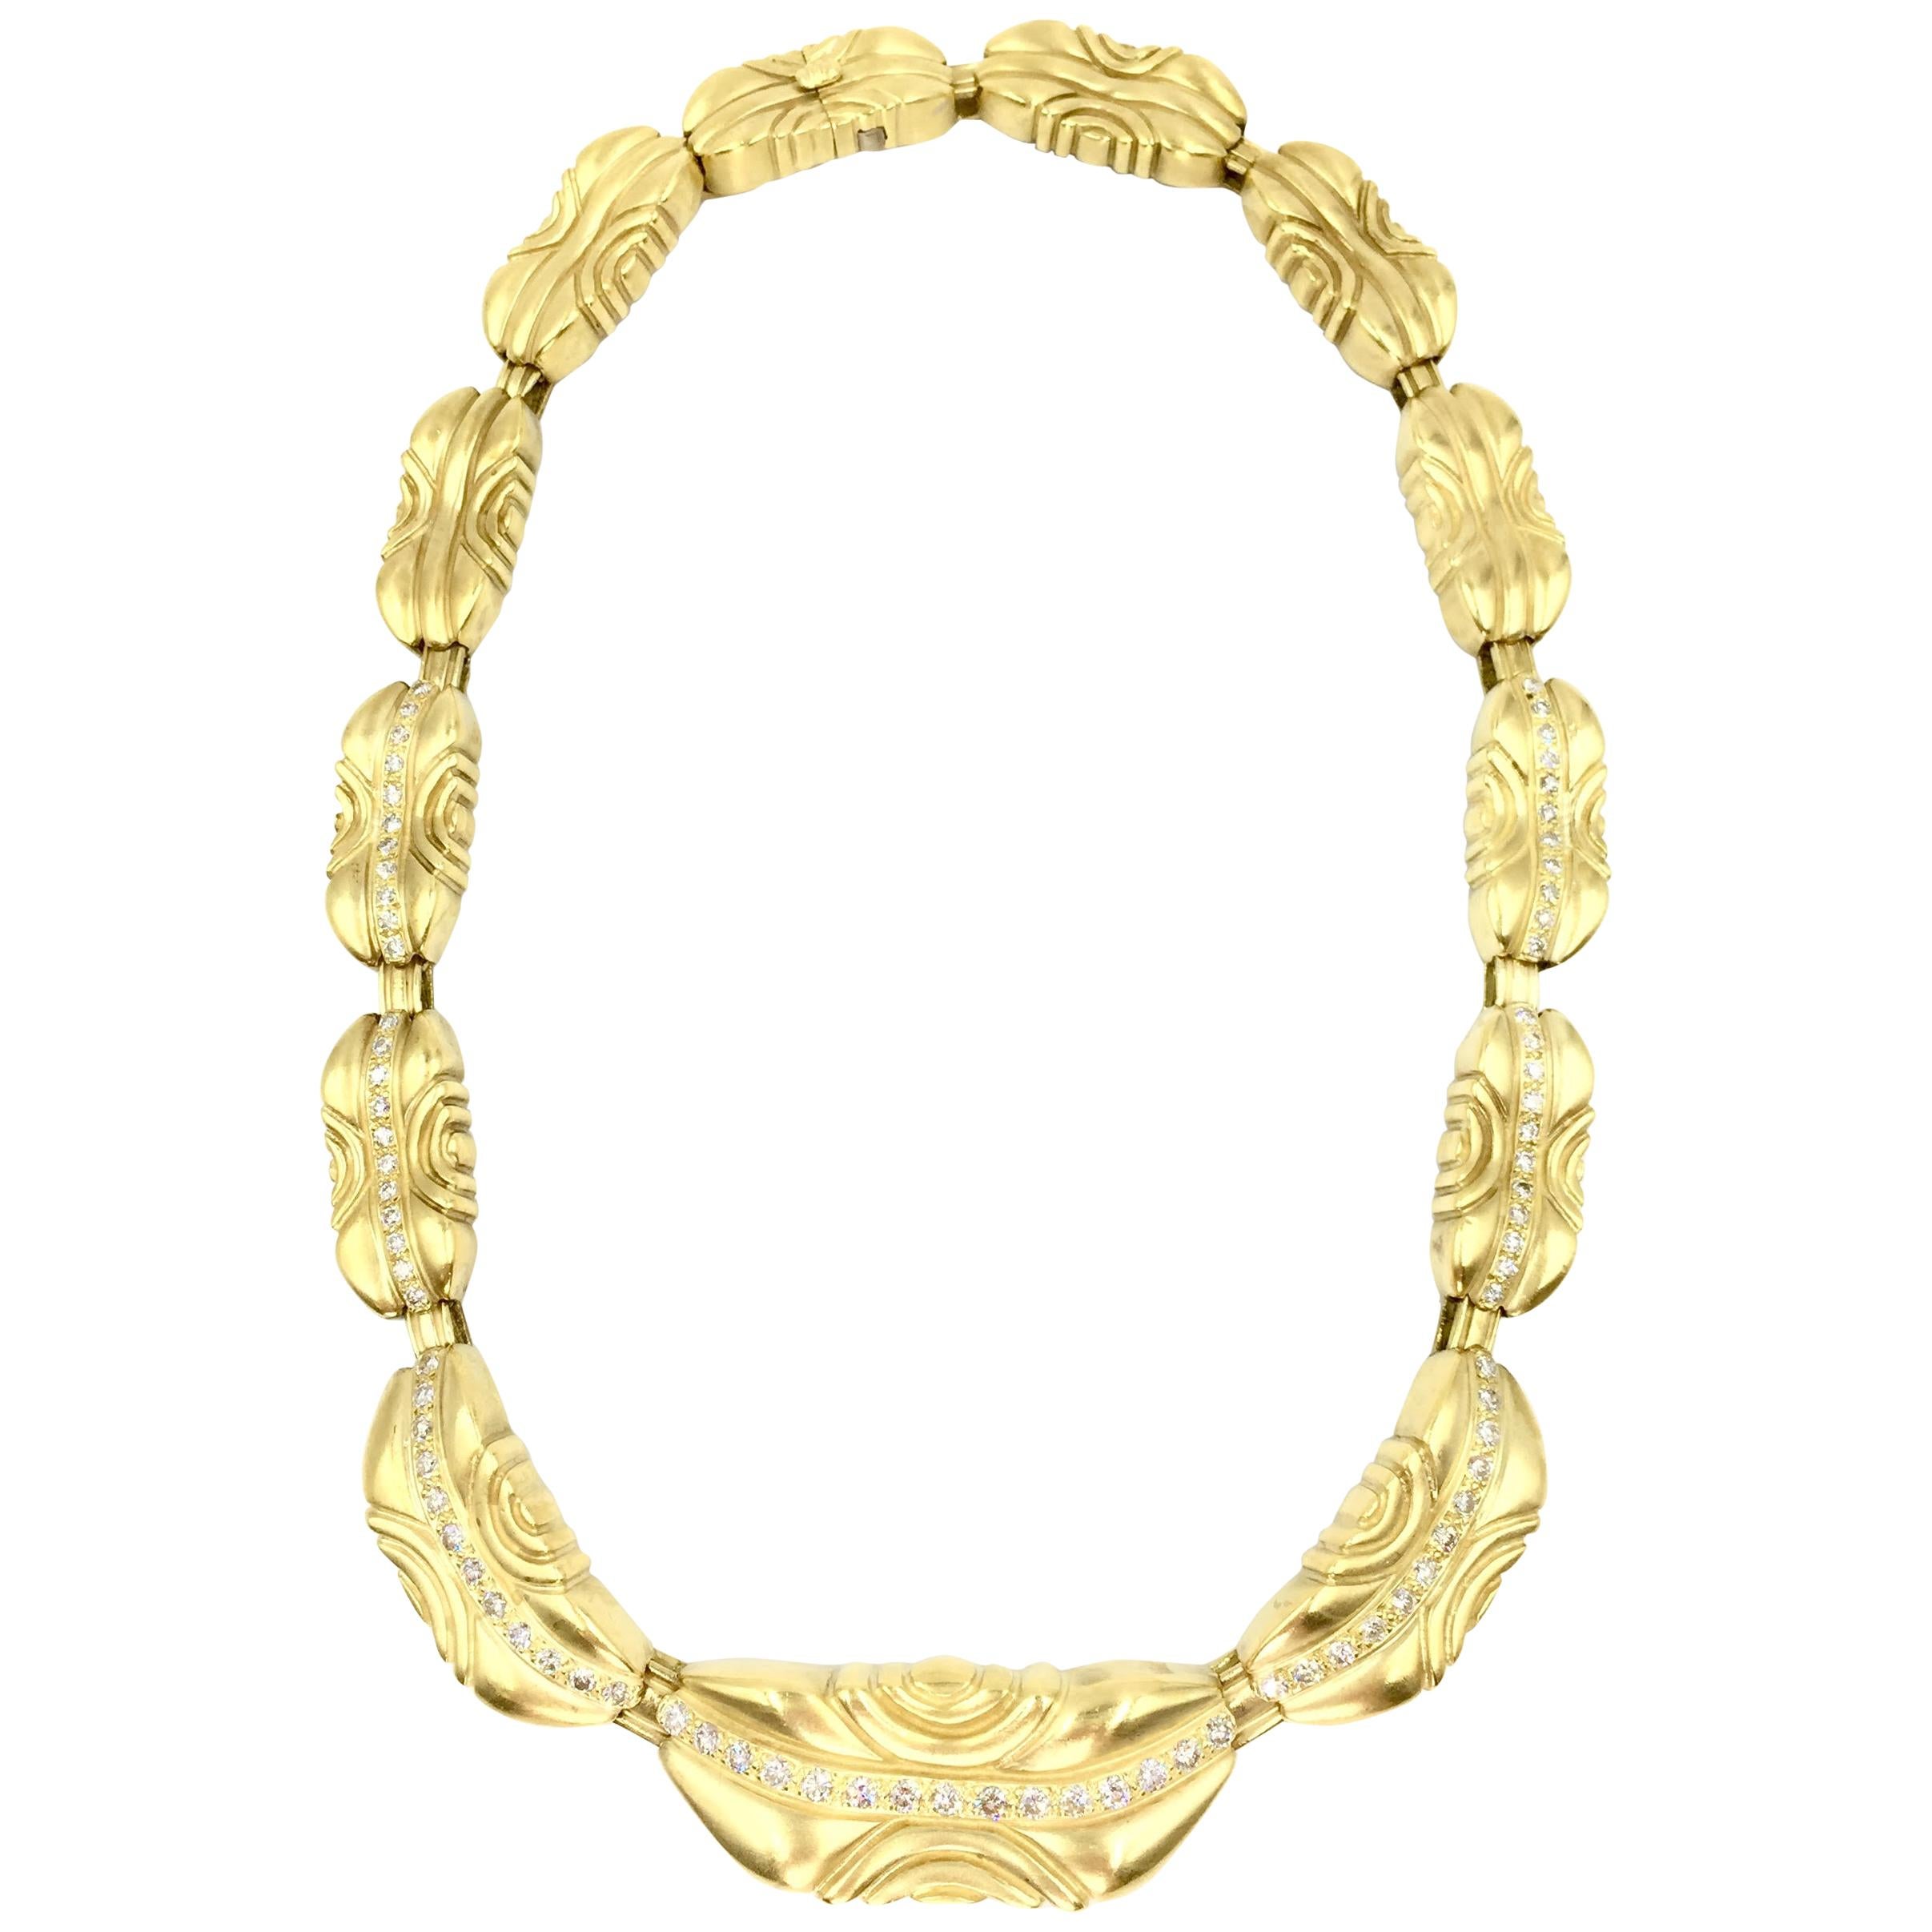 Vahe Naltchayan 18 Karat Yellow Gold and Diamond Collar Necklace 2.47 Carat TW For Sale